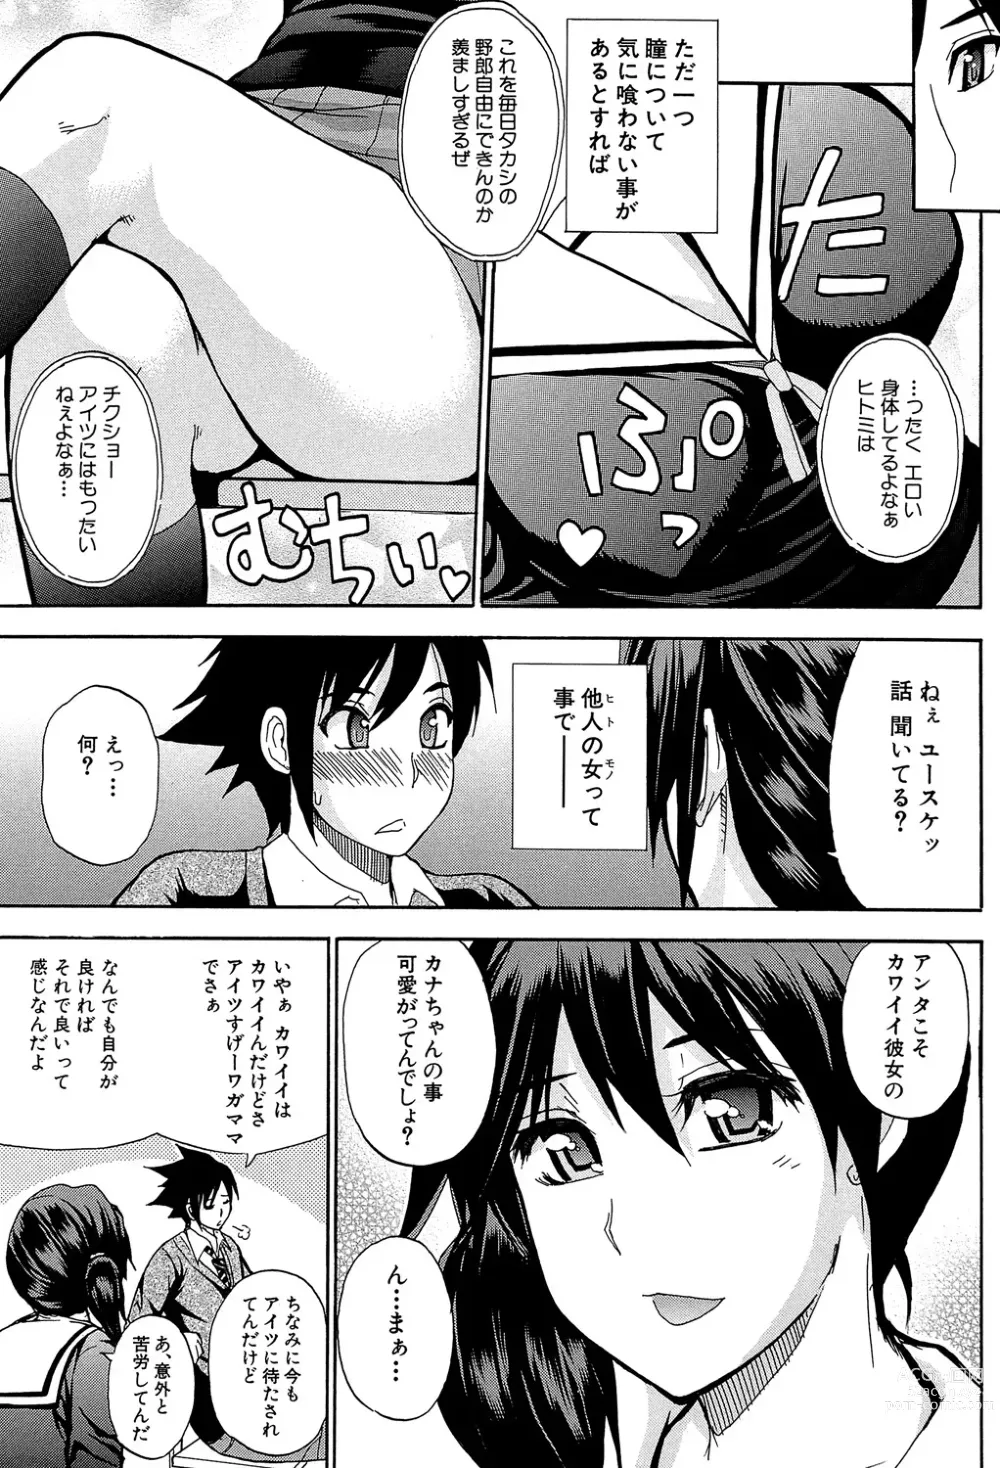 Page 4 of manga Watashi no Shitai ○○na Koto